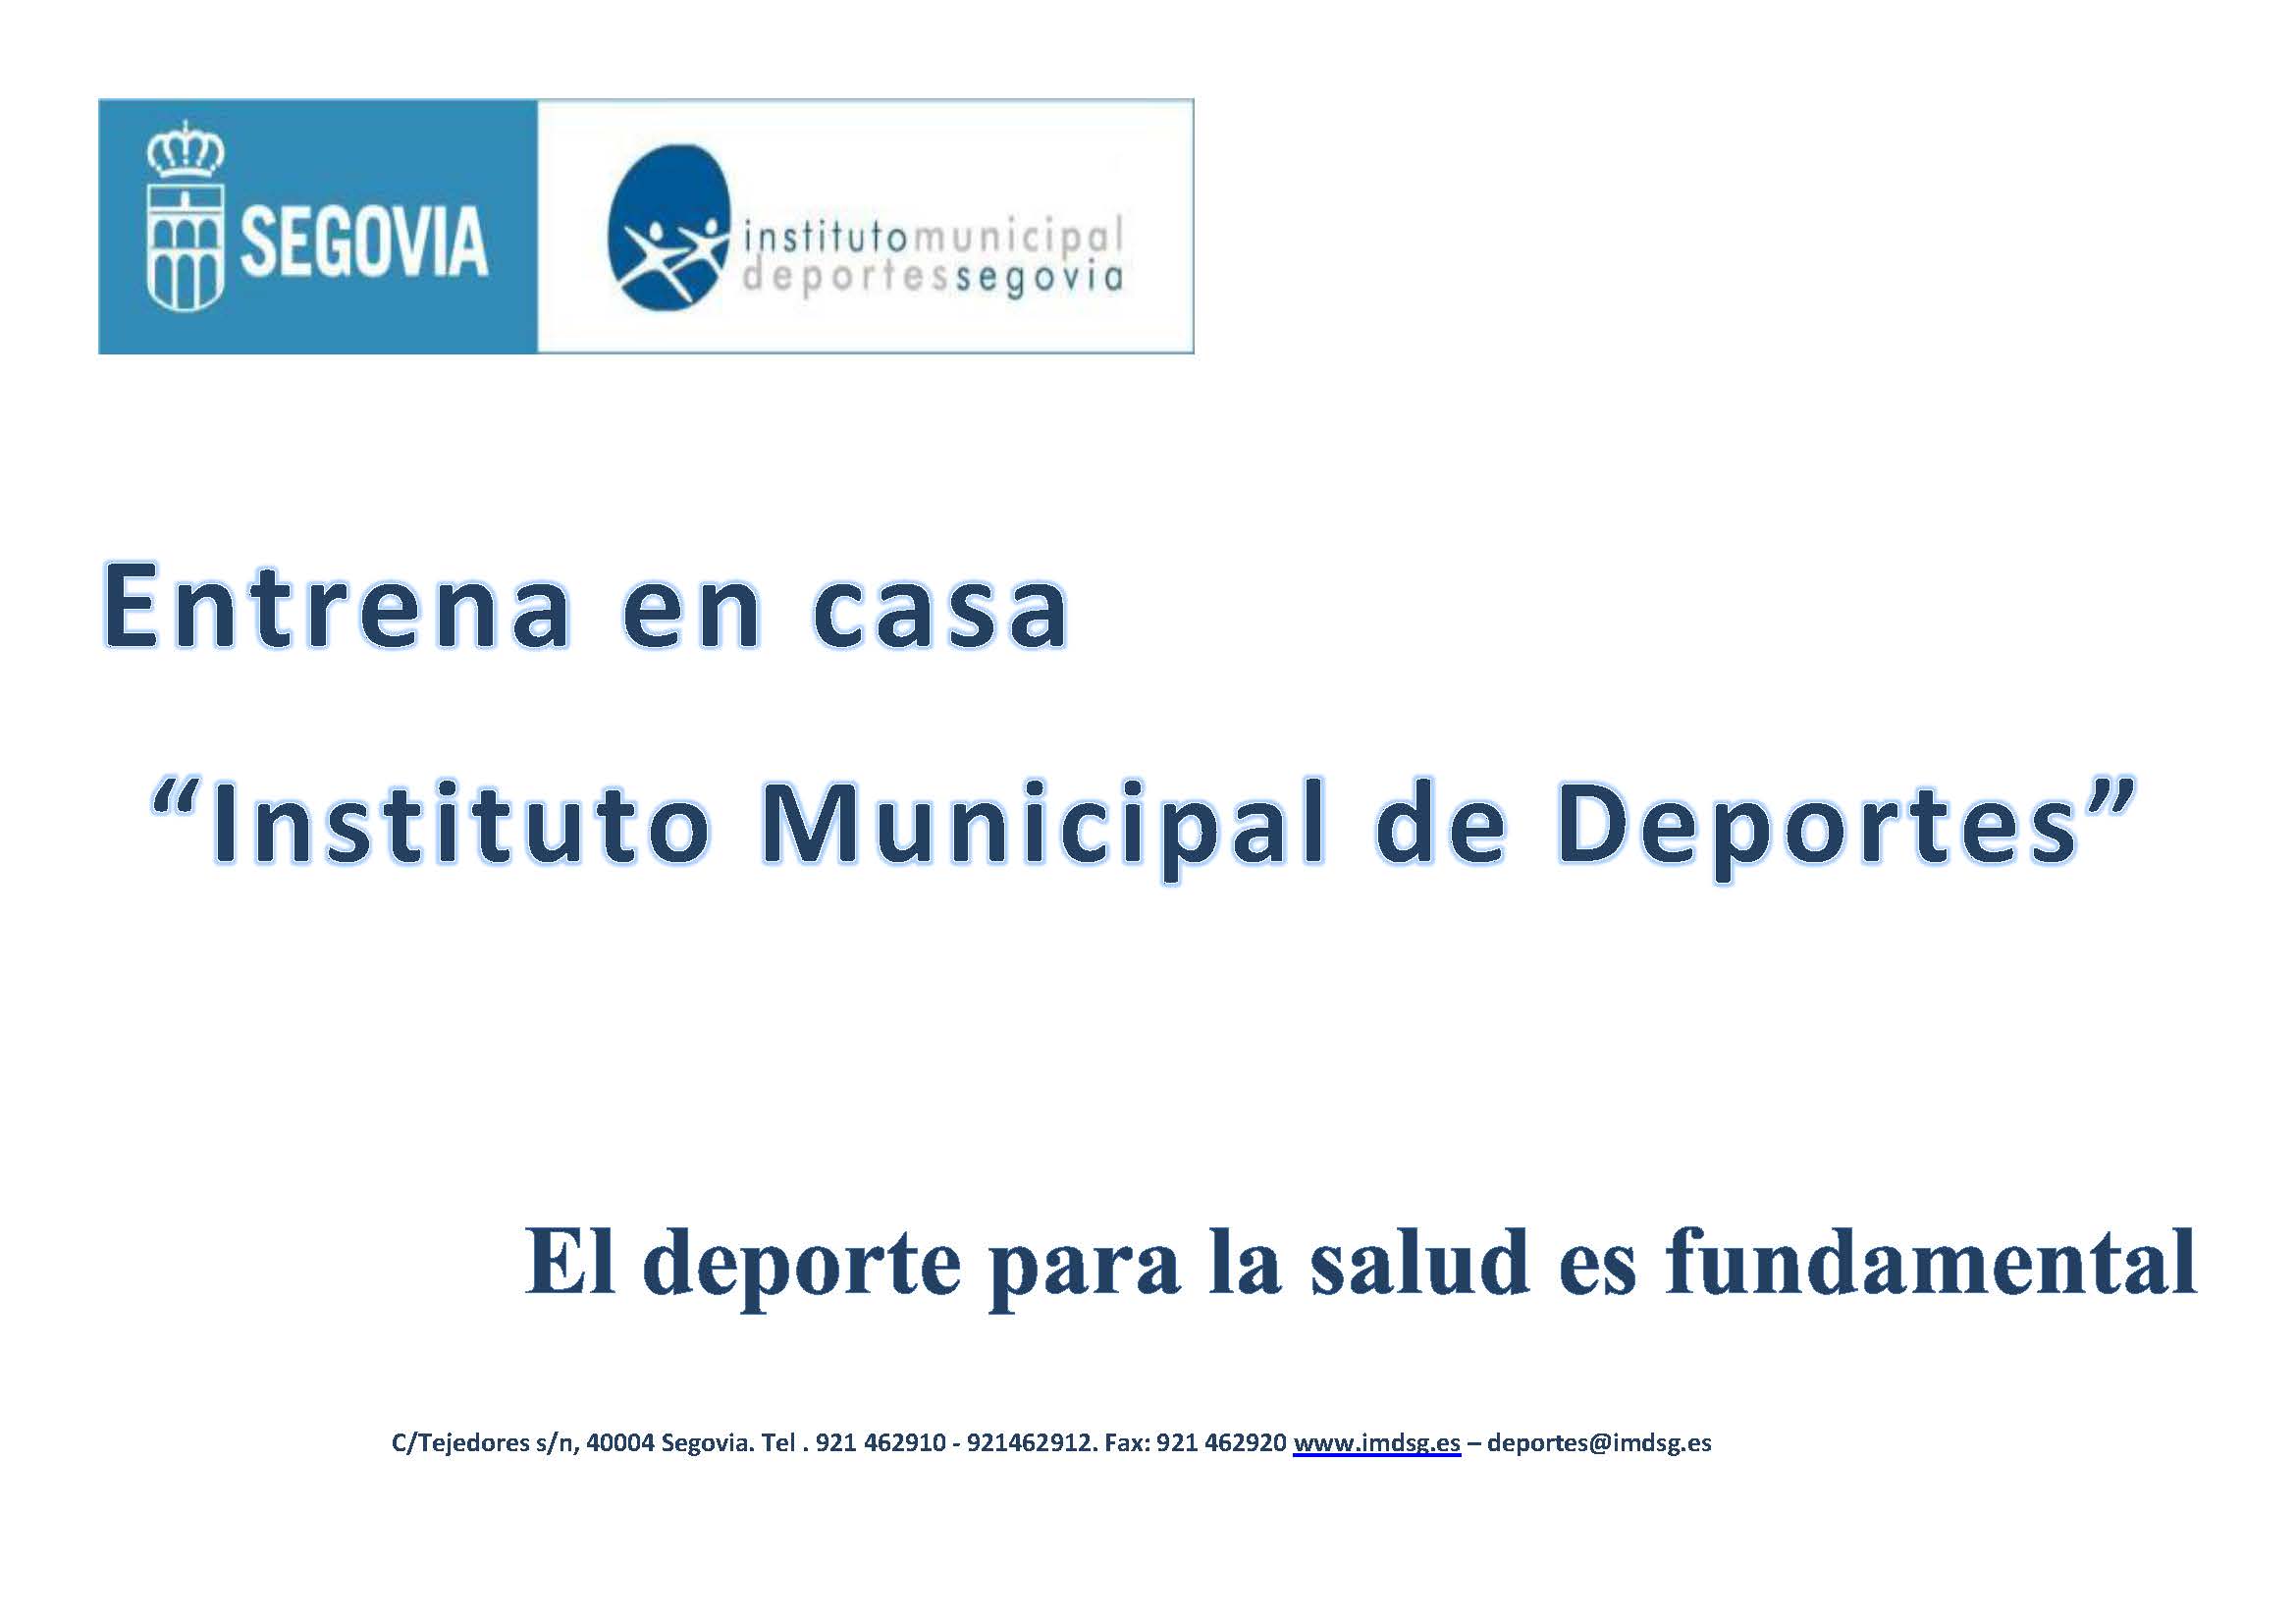 Entrena en casa con el Instituto Municipal de Deportes de Segovia